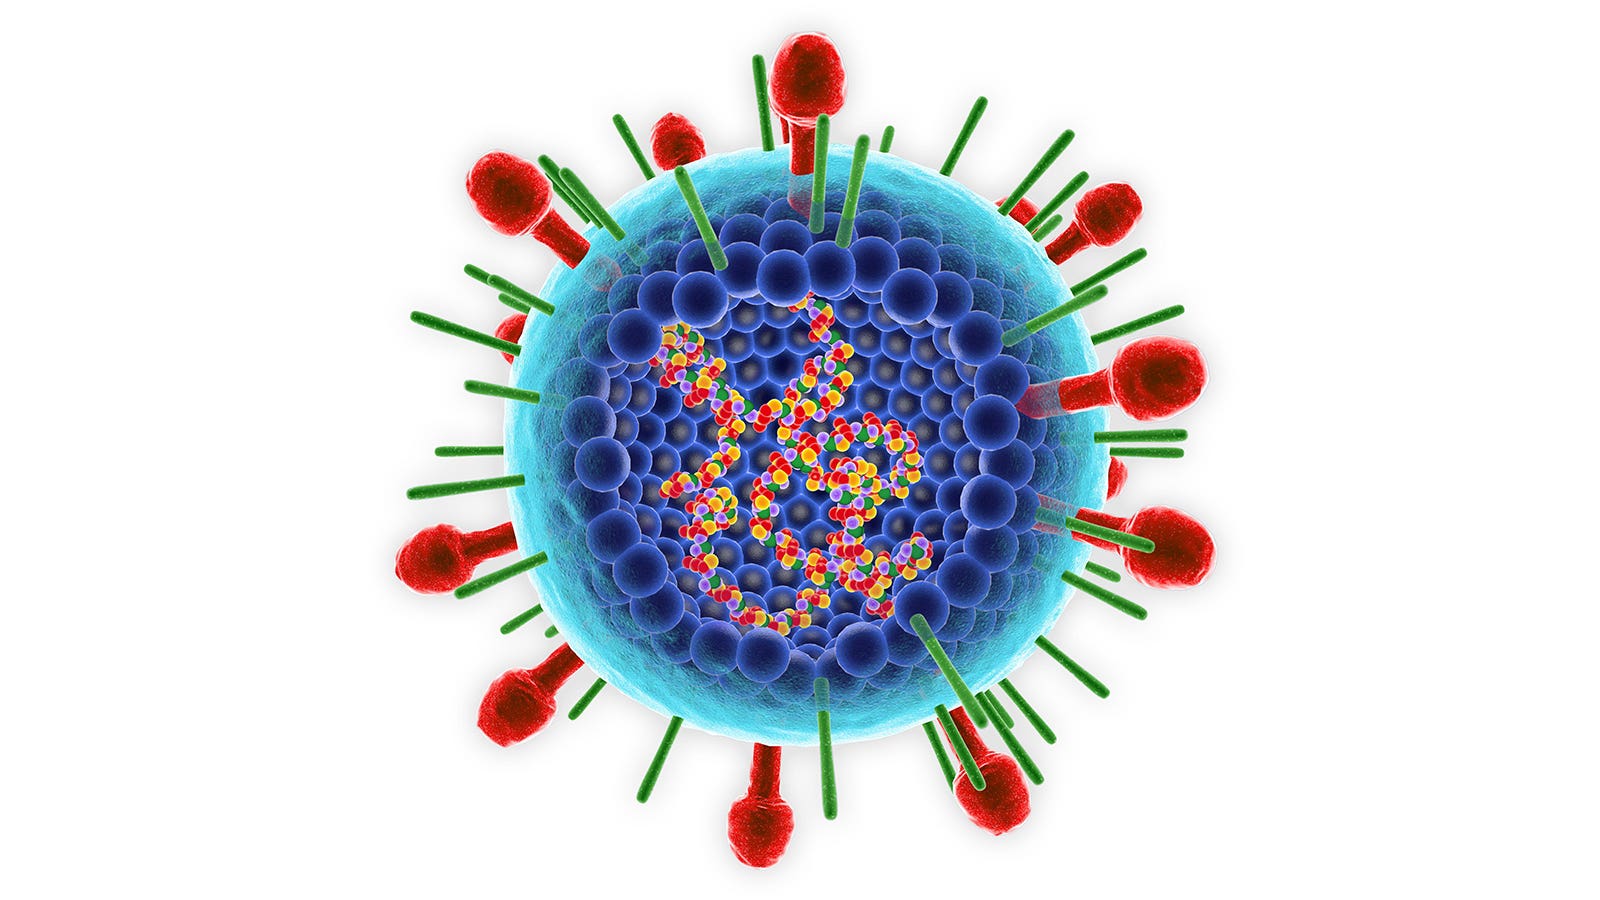 <font color="red">呼吸</font>道合胞病毒（RSV）抗体Nirsevimab，试验取得积极结果